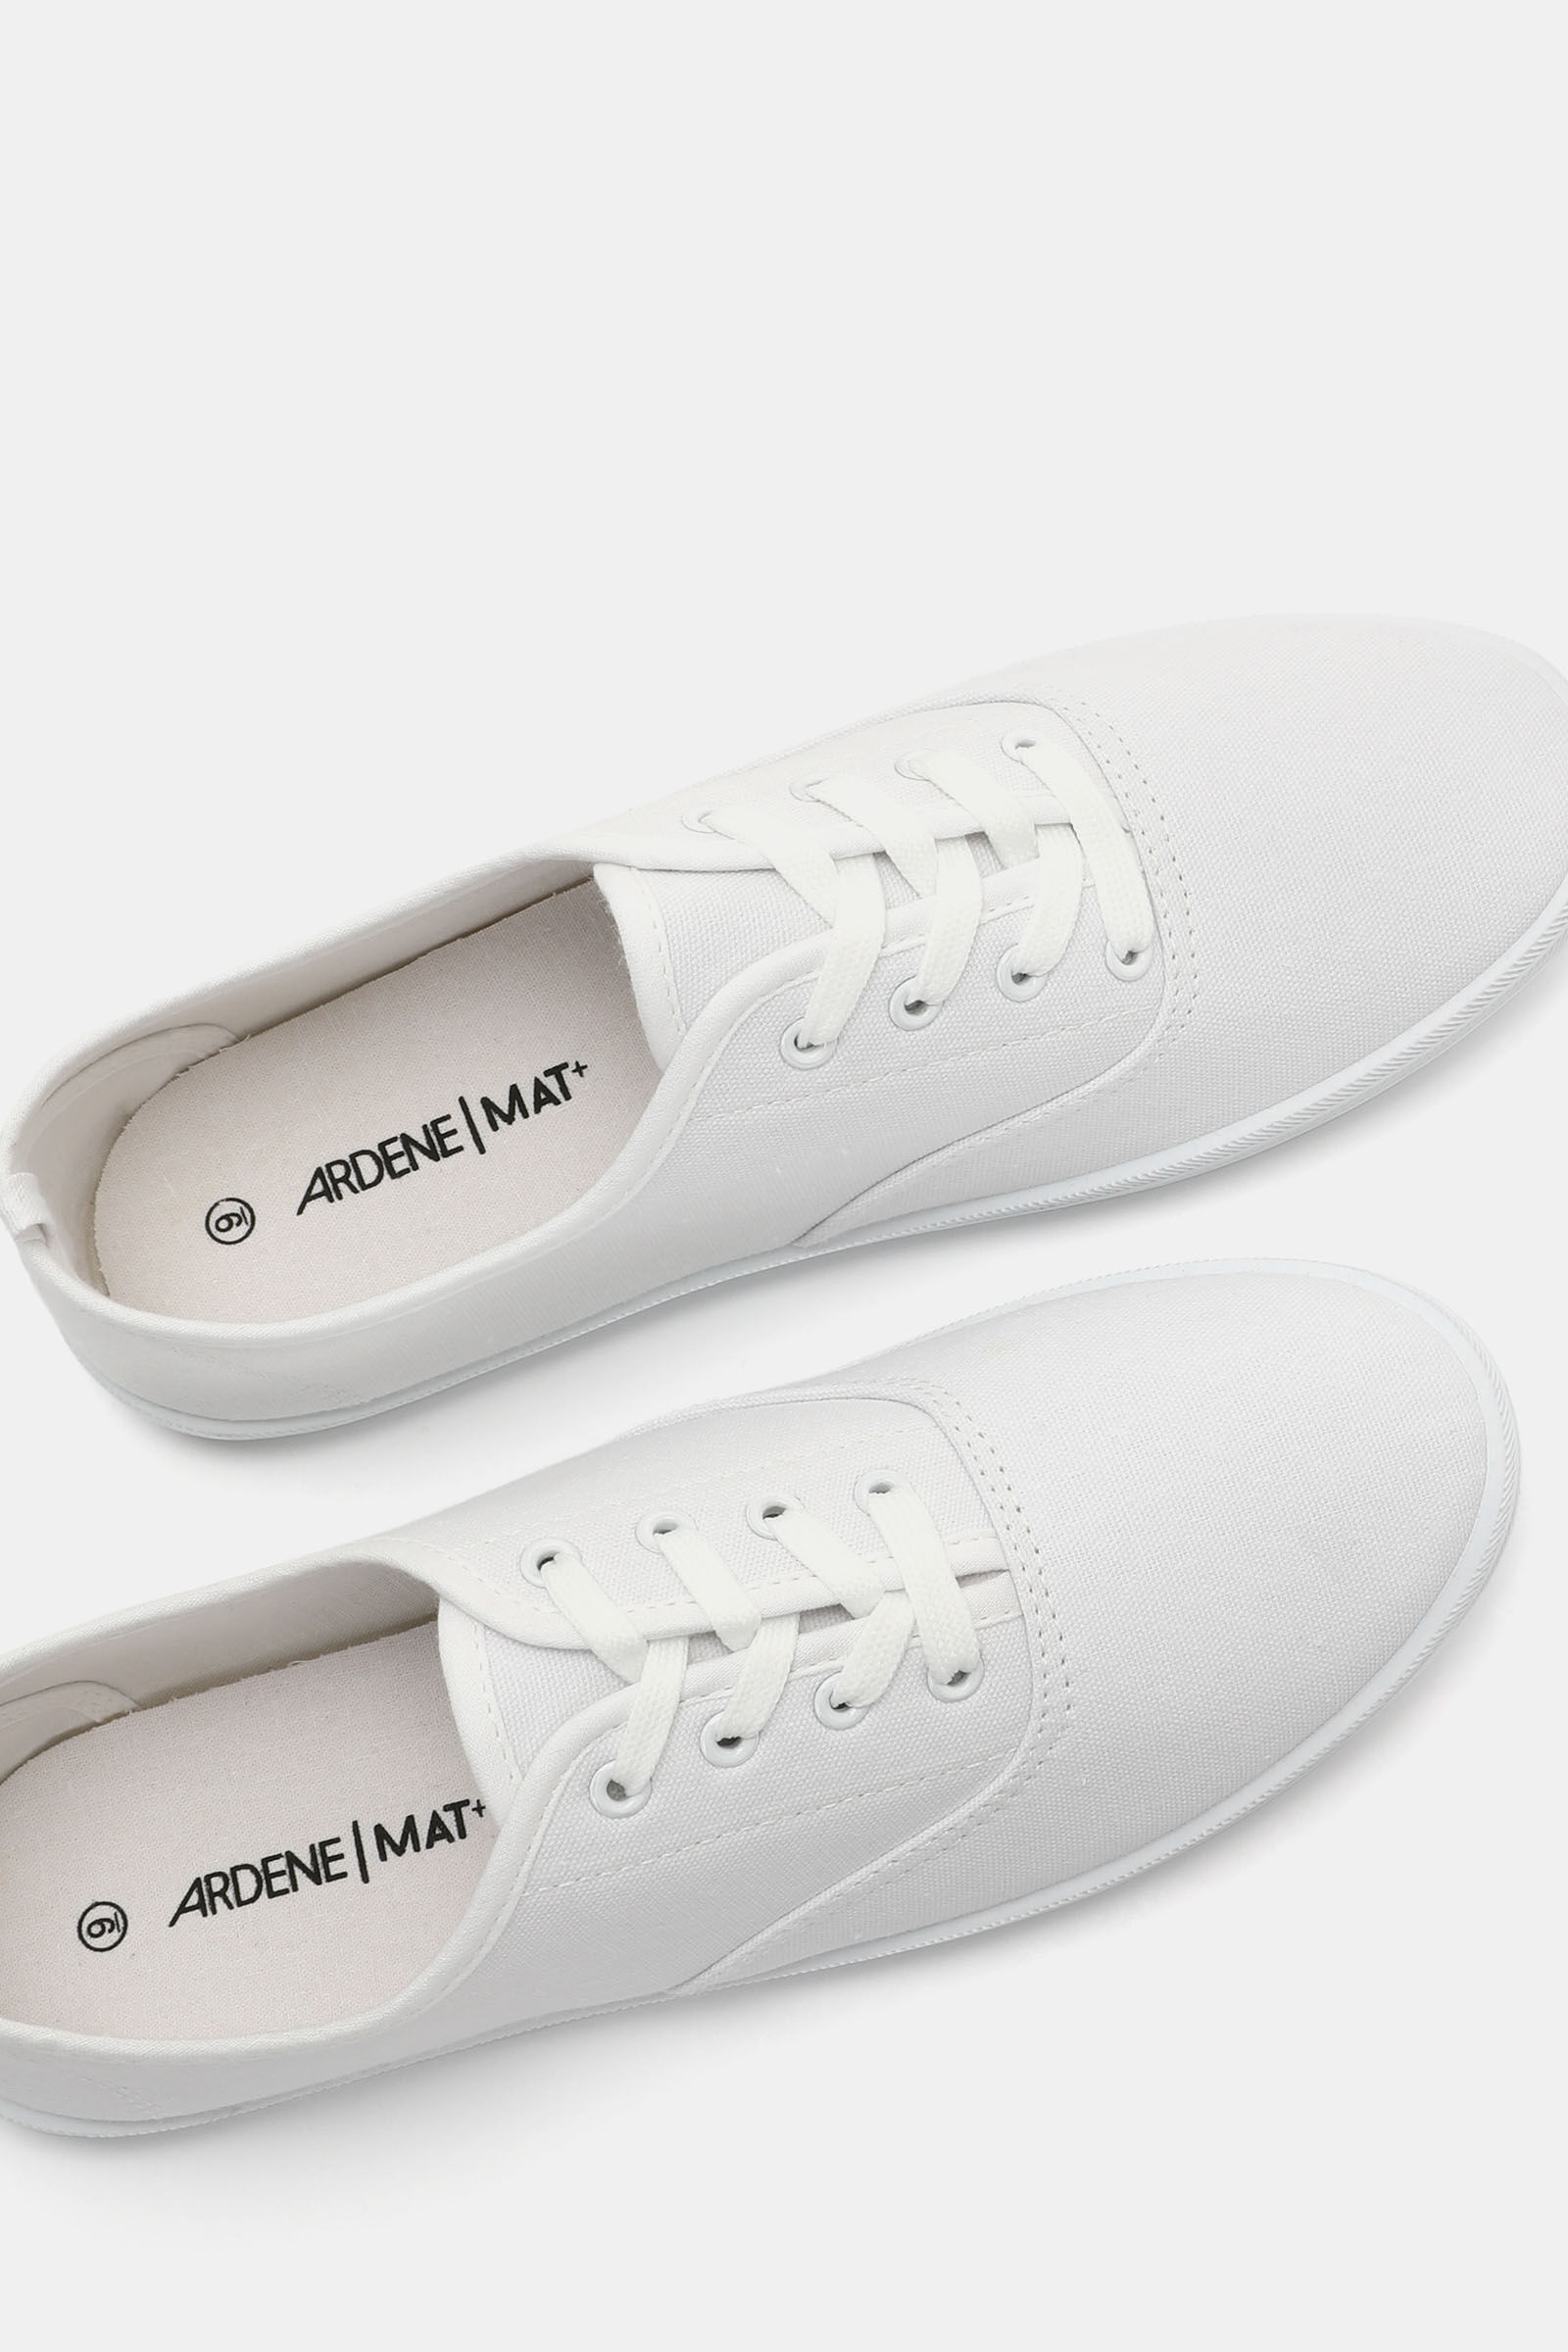 ardene white shoes